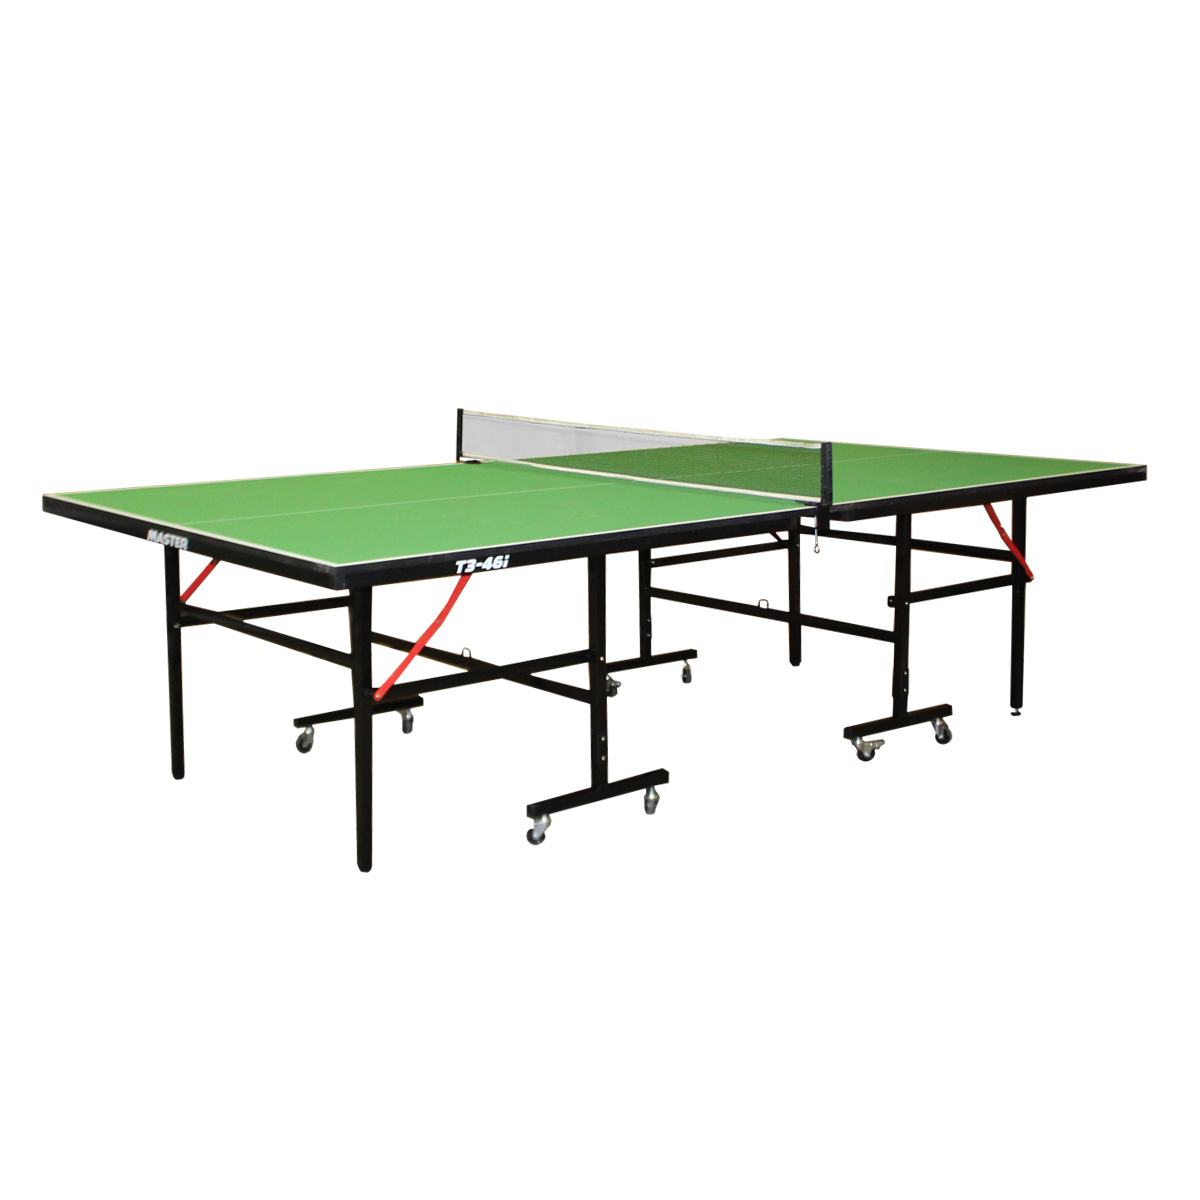  Stôl na stolný tenis MASTER T3-46i - zelený